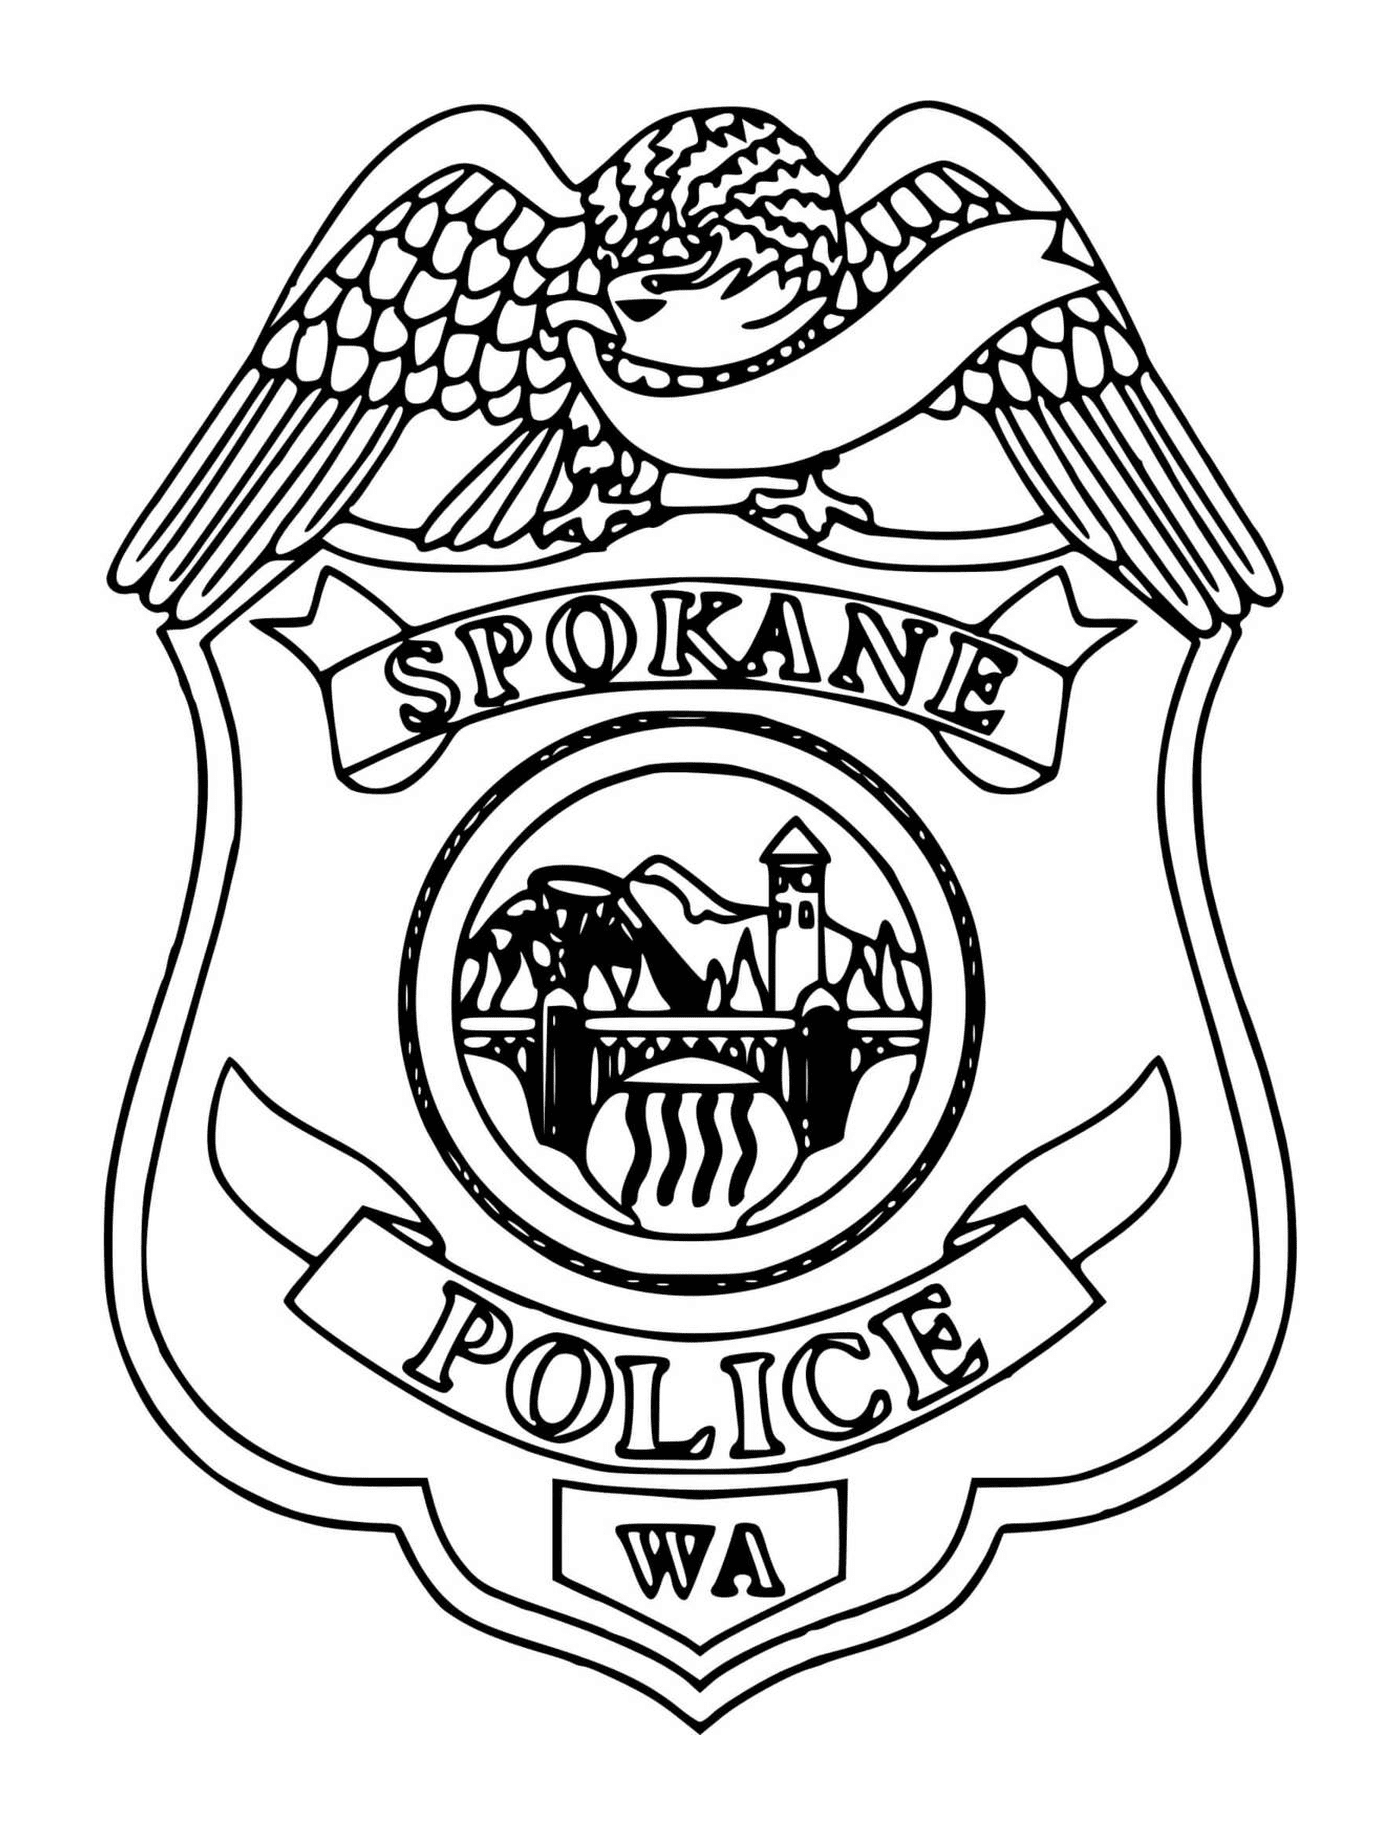  Emblema da polícia de Spokane 